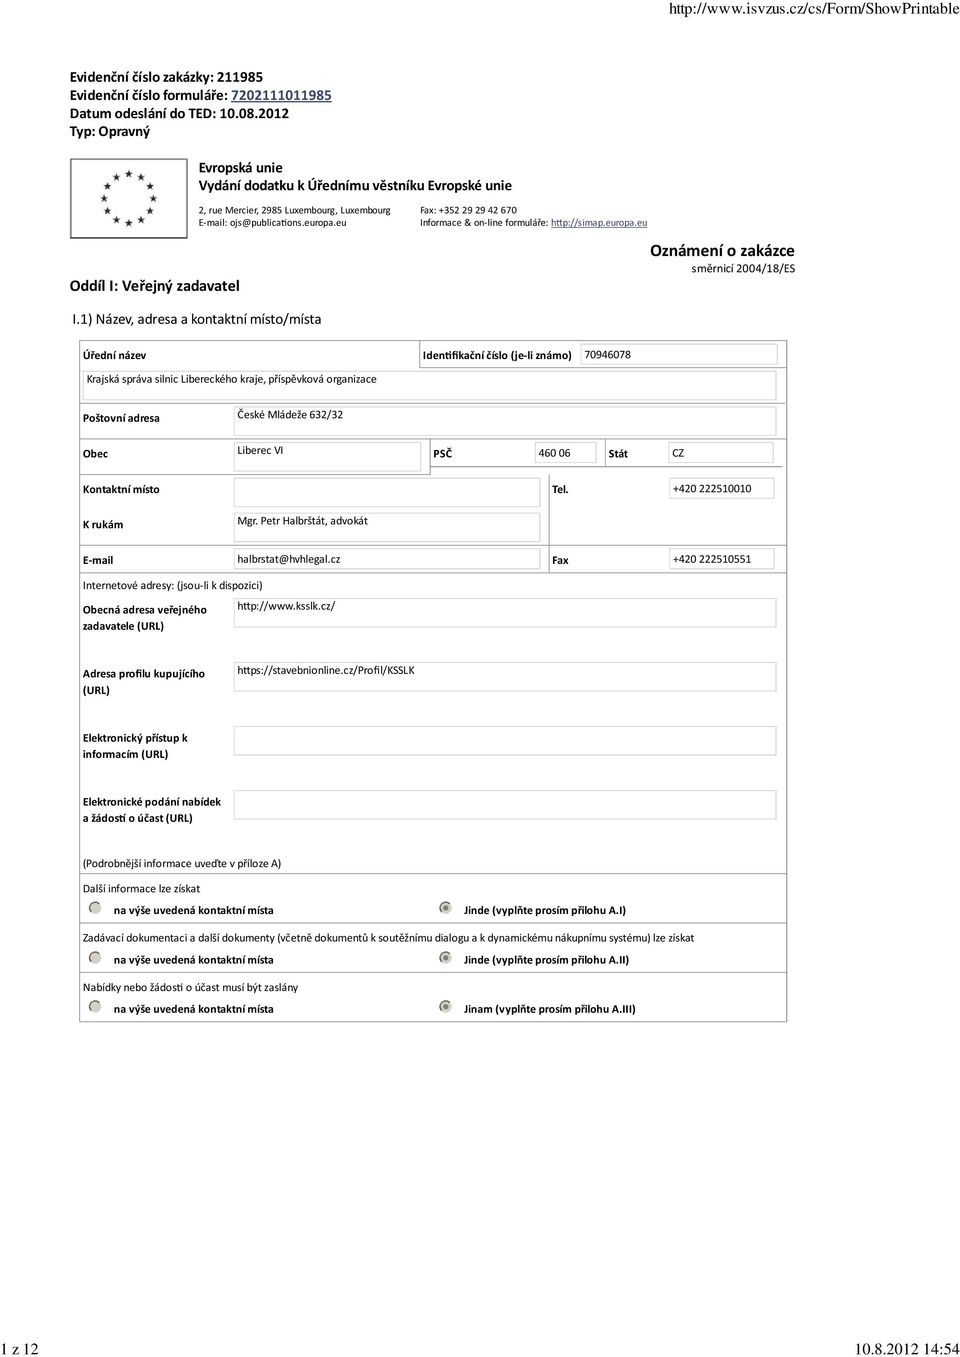 eu Fax: +352 29 29 42 670 Informace & on line formuláře: h p://simap.europa.eu Oznámení o zakázce směrnicí 2004/18/ES I.